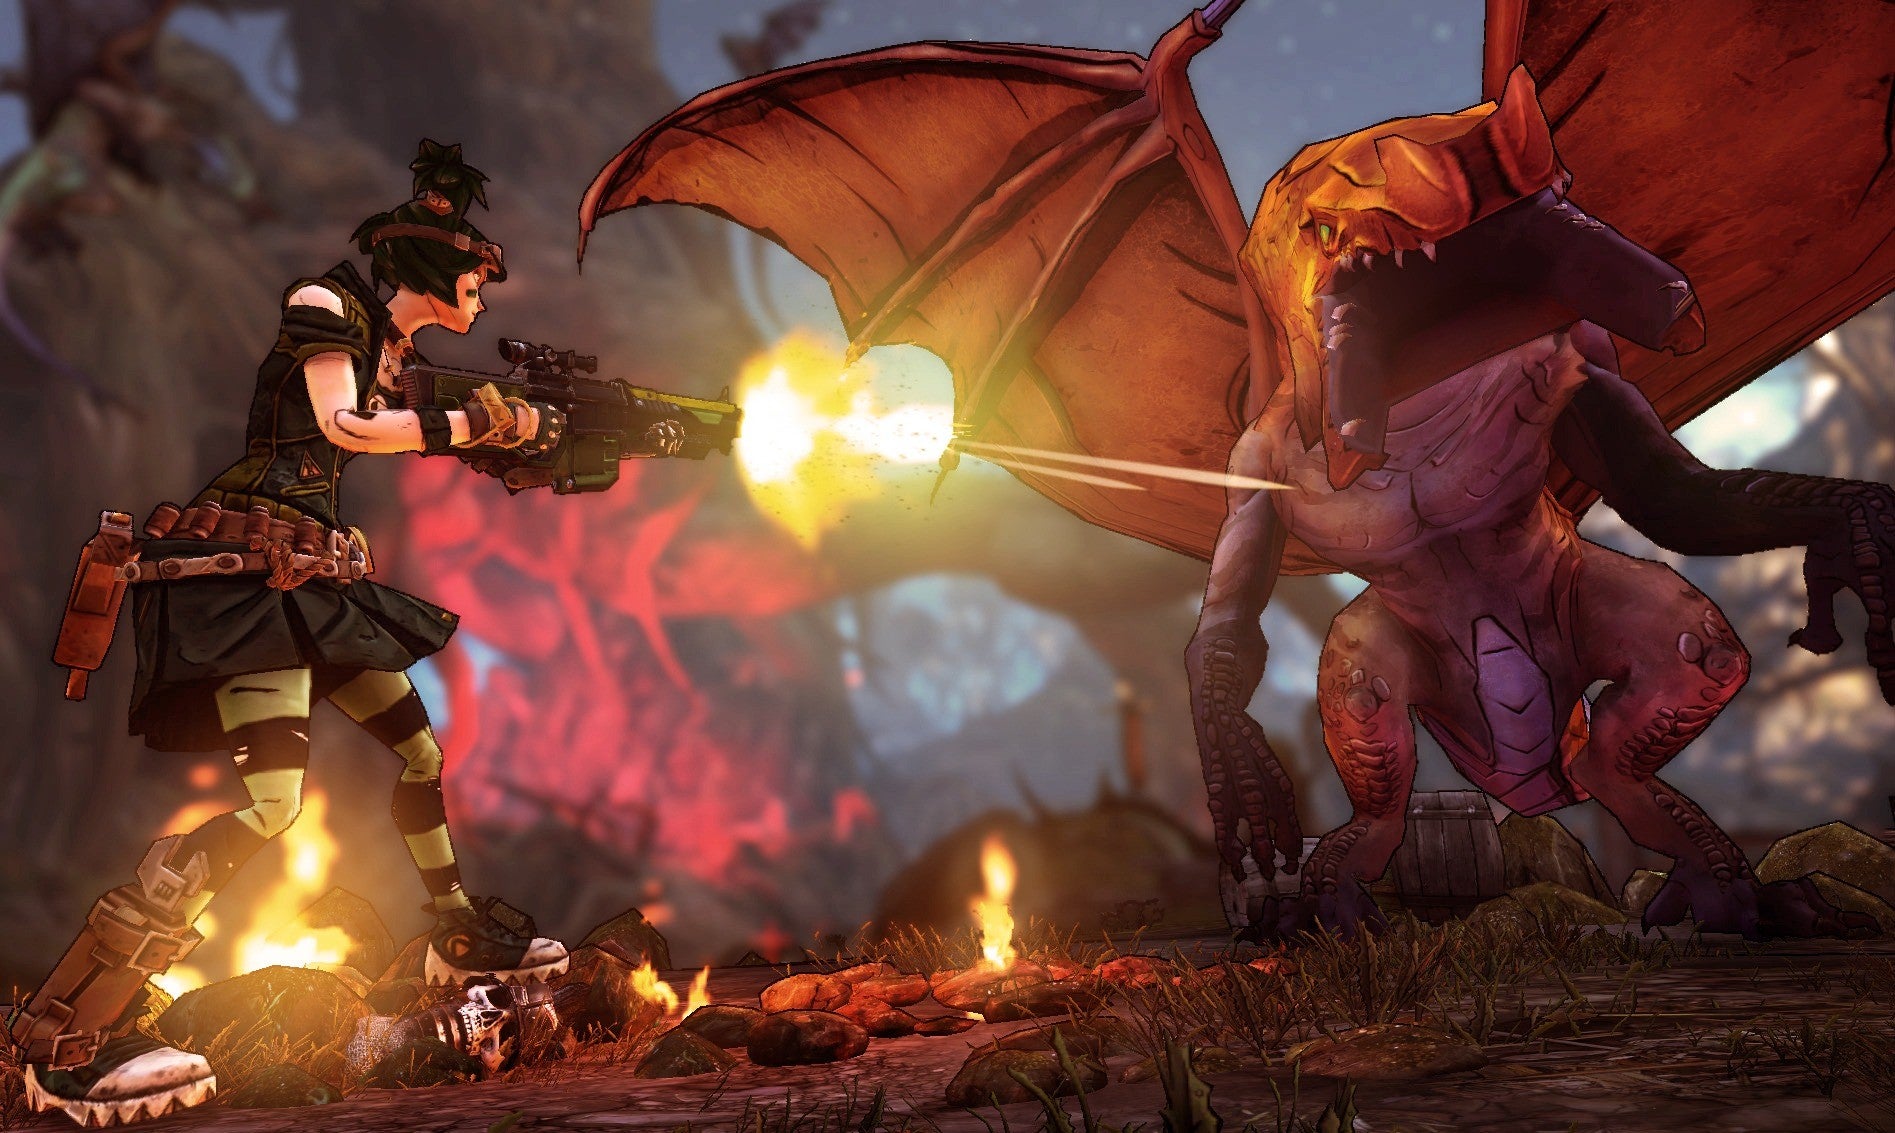 A screenshot of Tiny Tina's Assault On Dragon Keep showing an assault on a dragon.